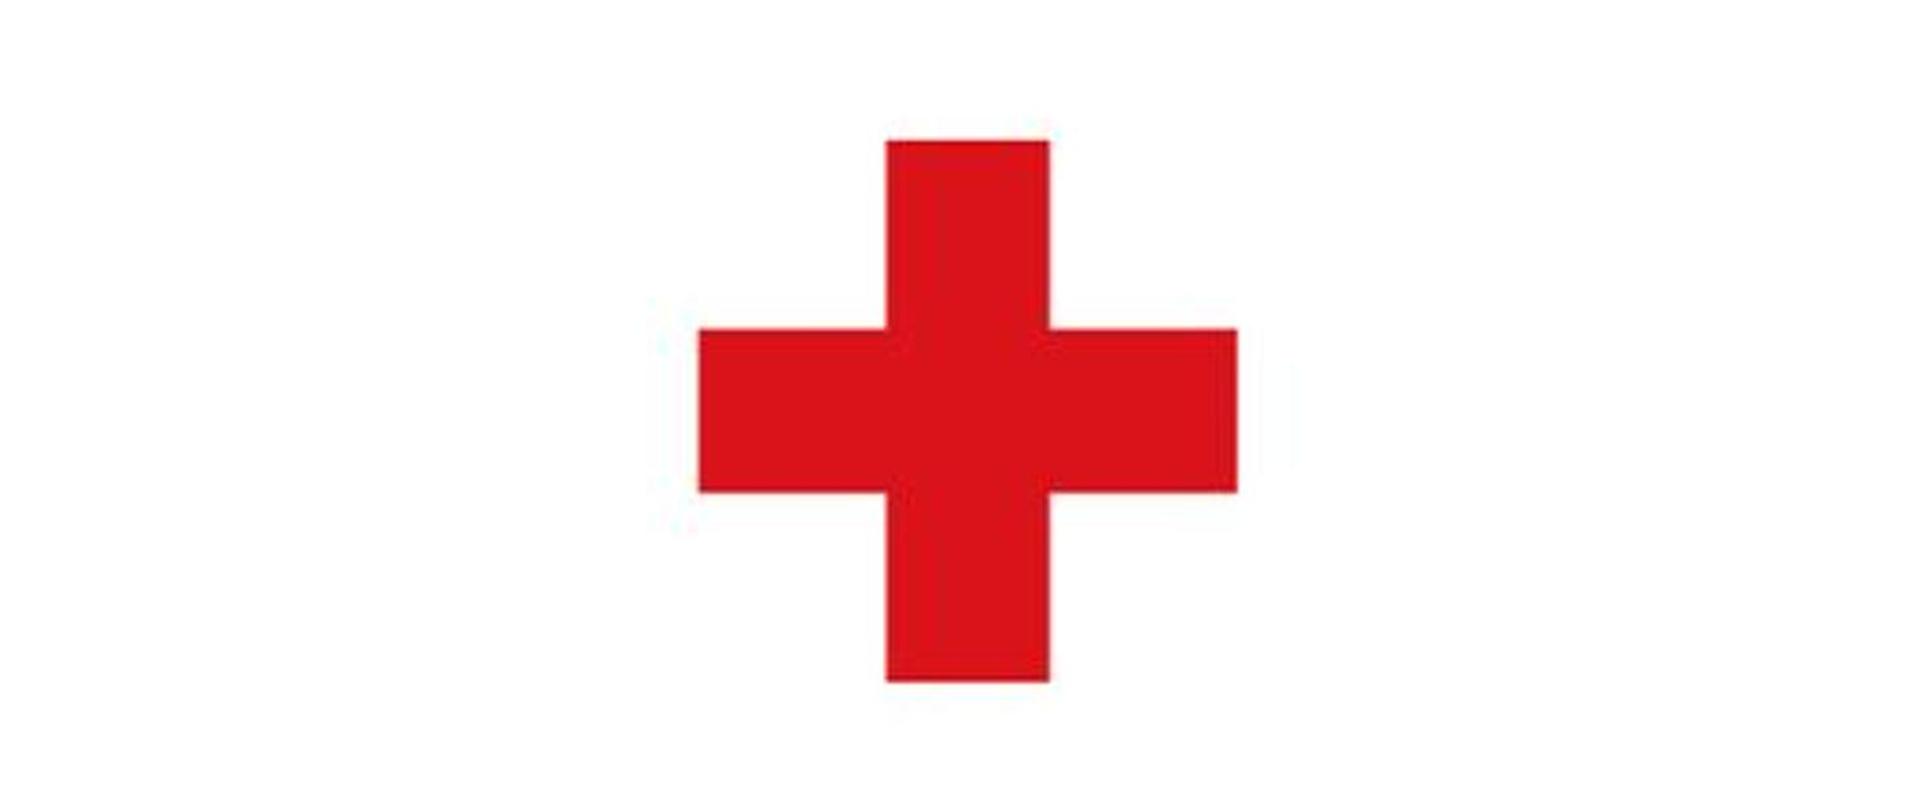 Zdjęcie przedstawia znak czerwony krzyż na białym tle.